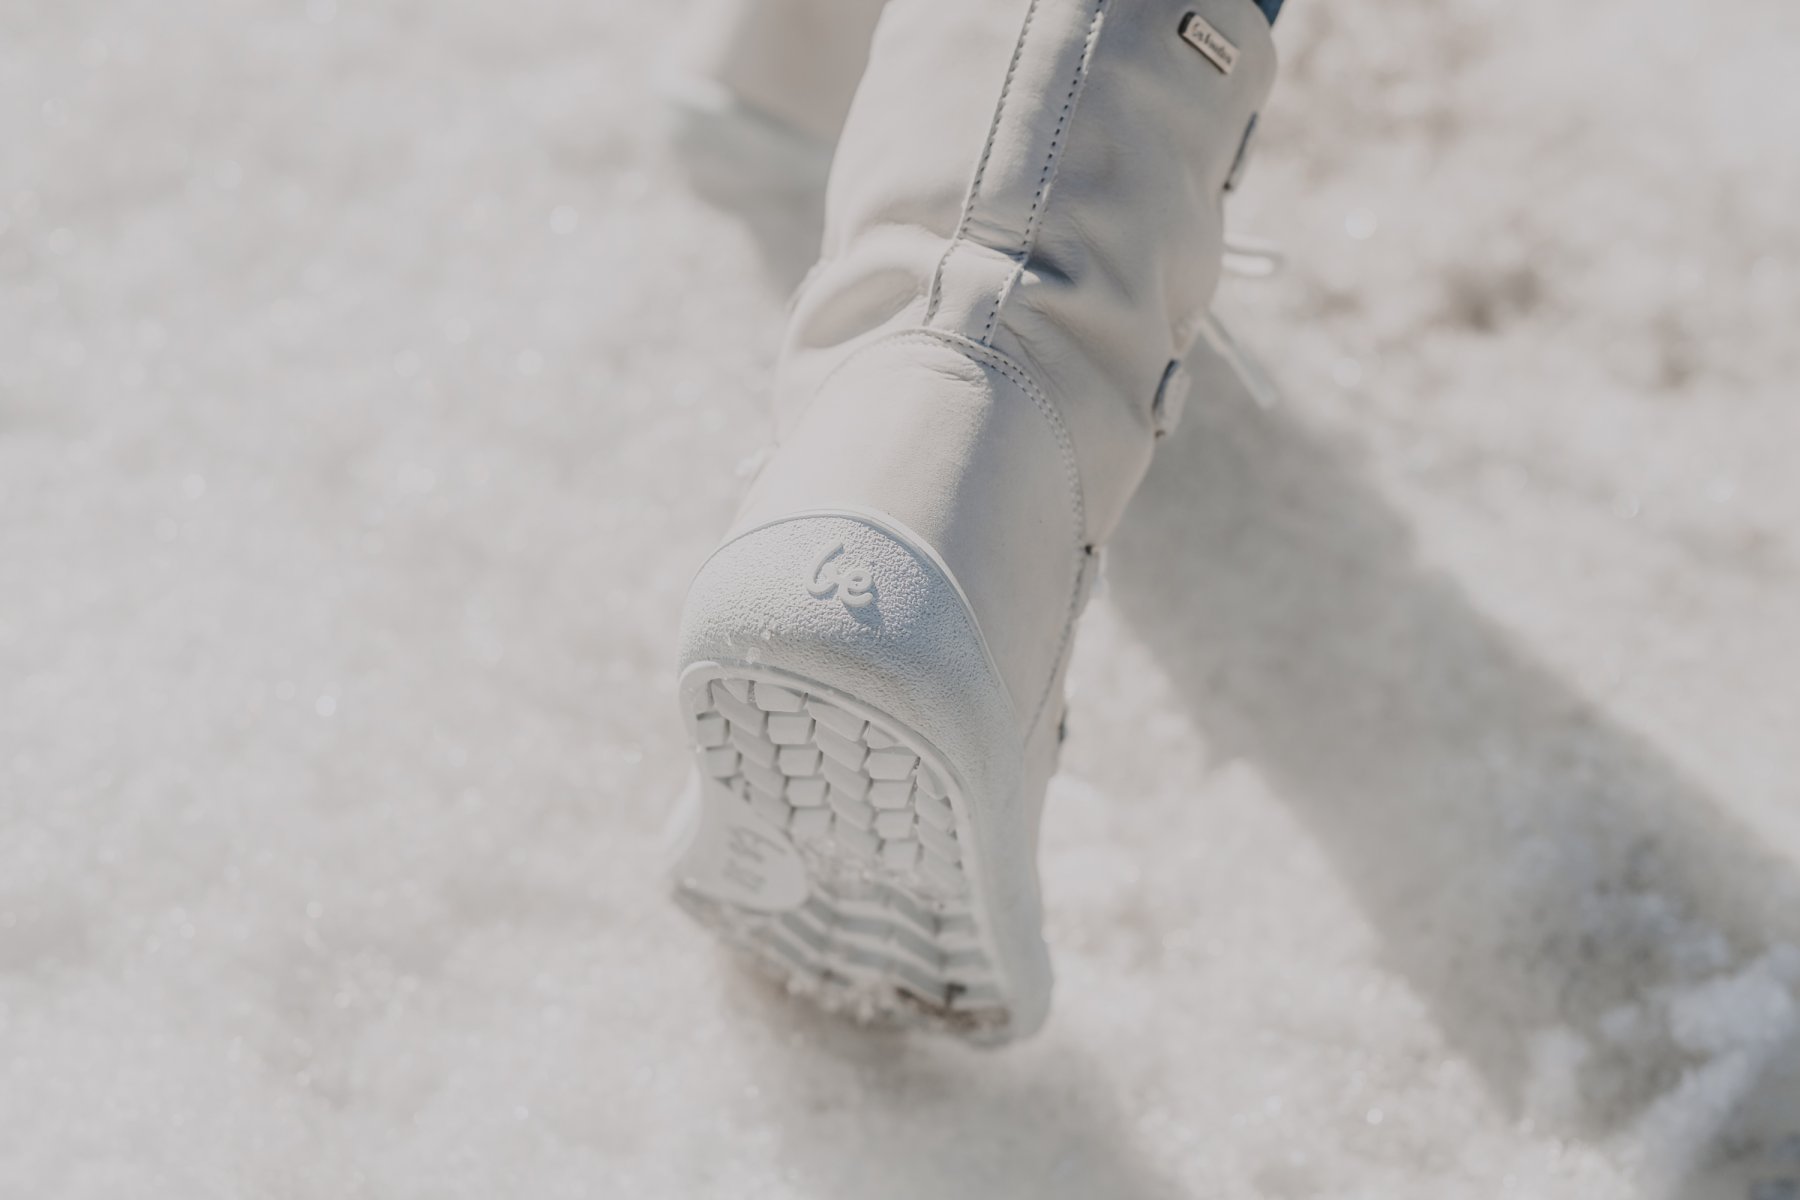 Be Lenka Winter Boots For Cheap Online - Brown Barefoot Snowfox Womens